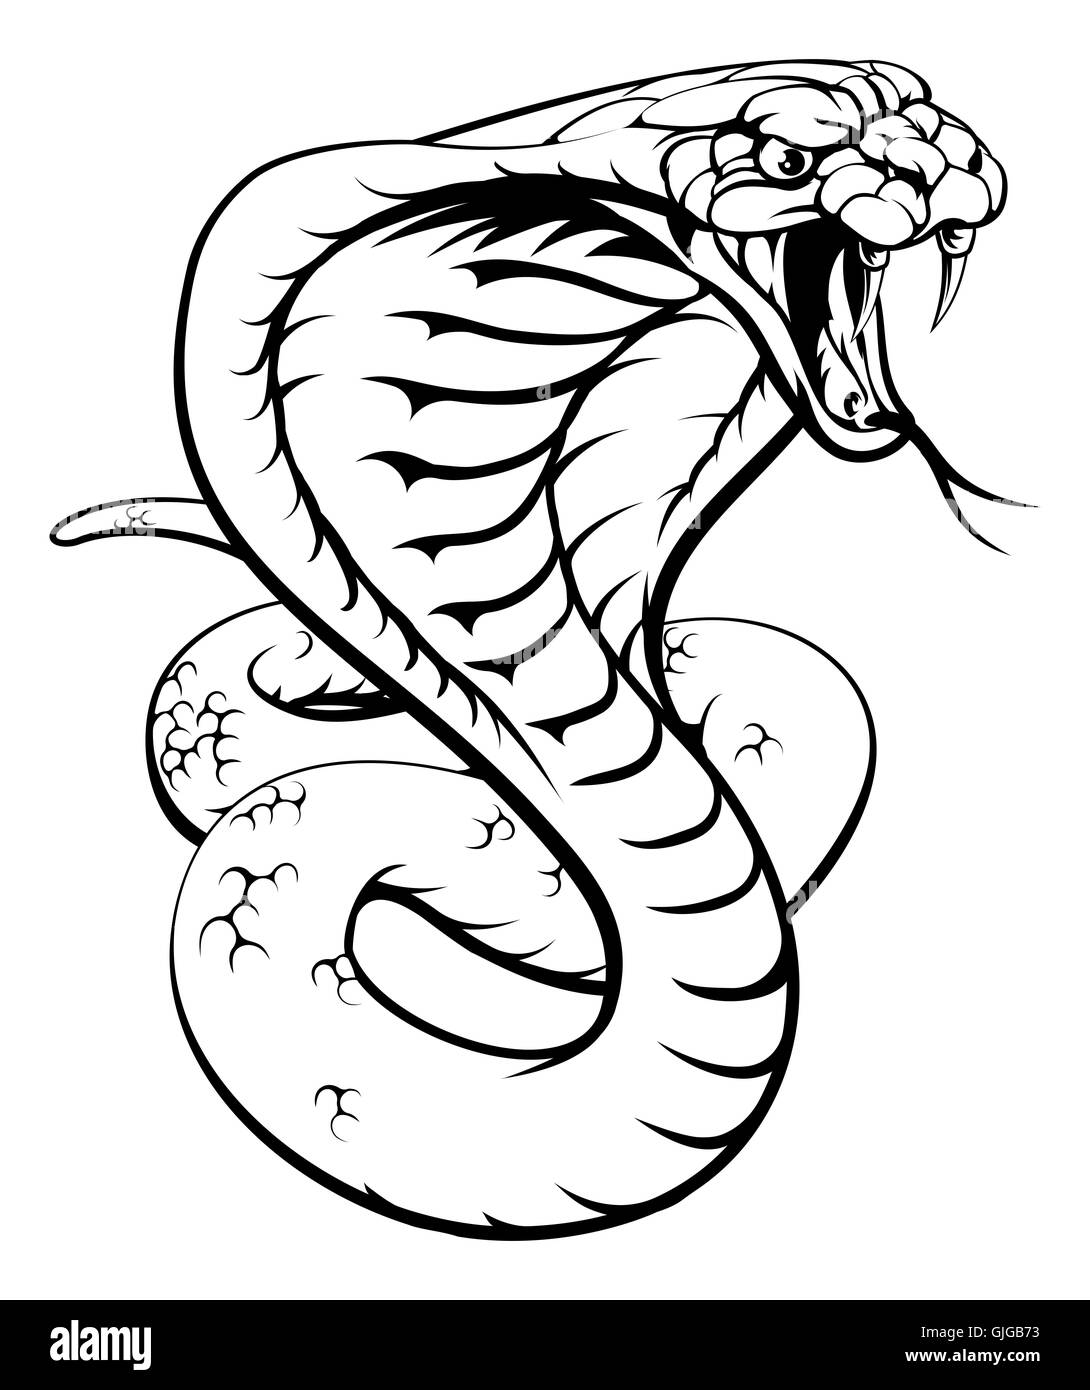 Eine Abbildung einer Königskobra Schlange in schwarz / weiß Stockfoto